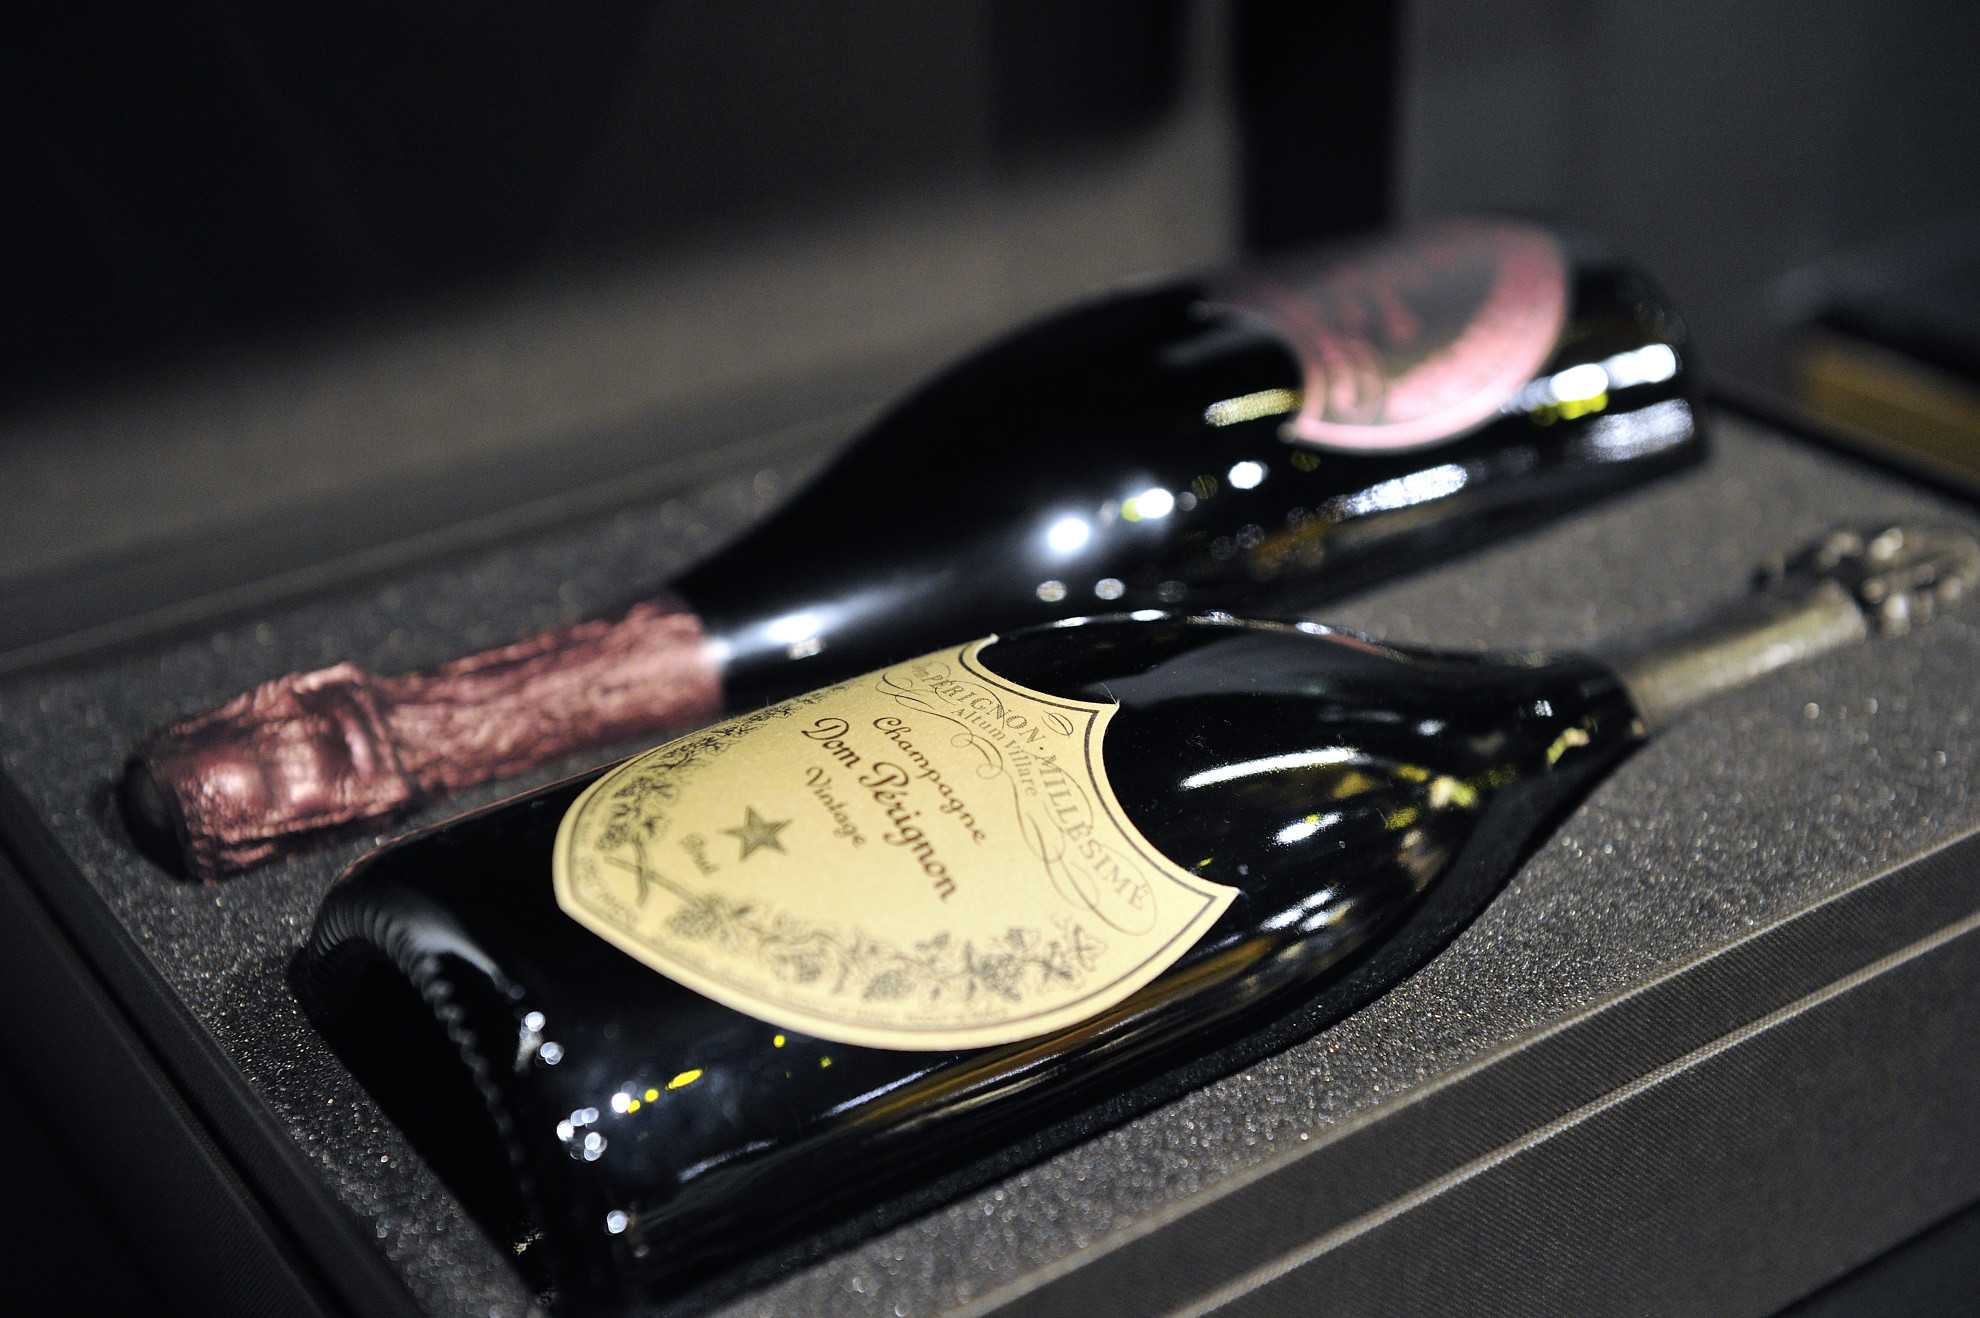 «дом периньон» - шампанское, известное во всем мире :: syl.ru